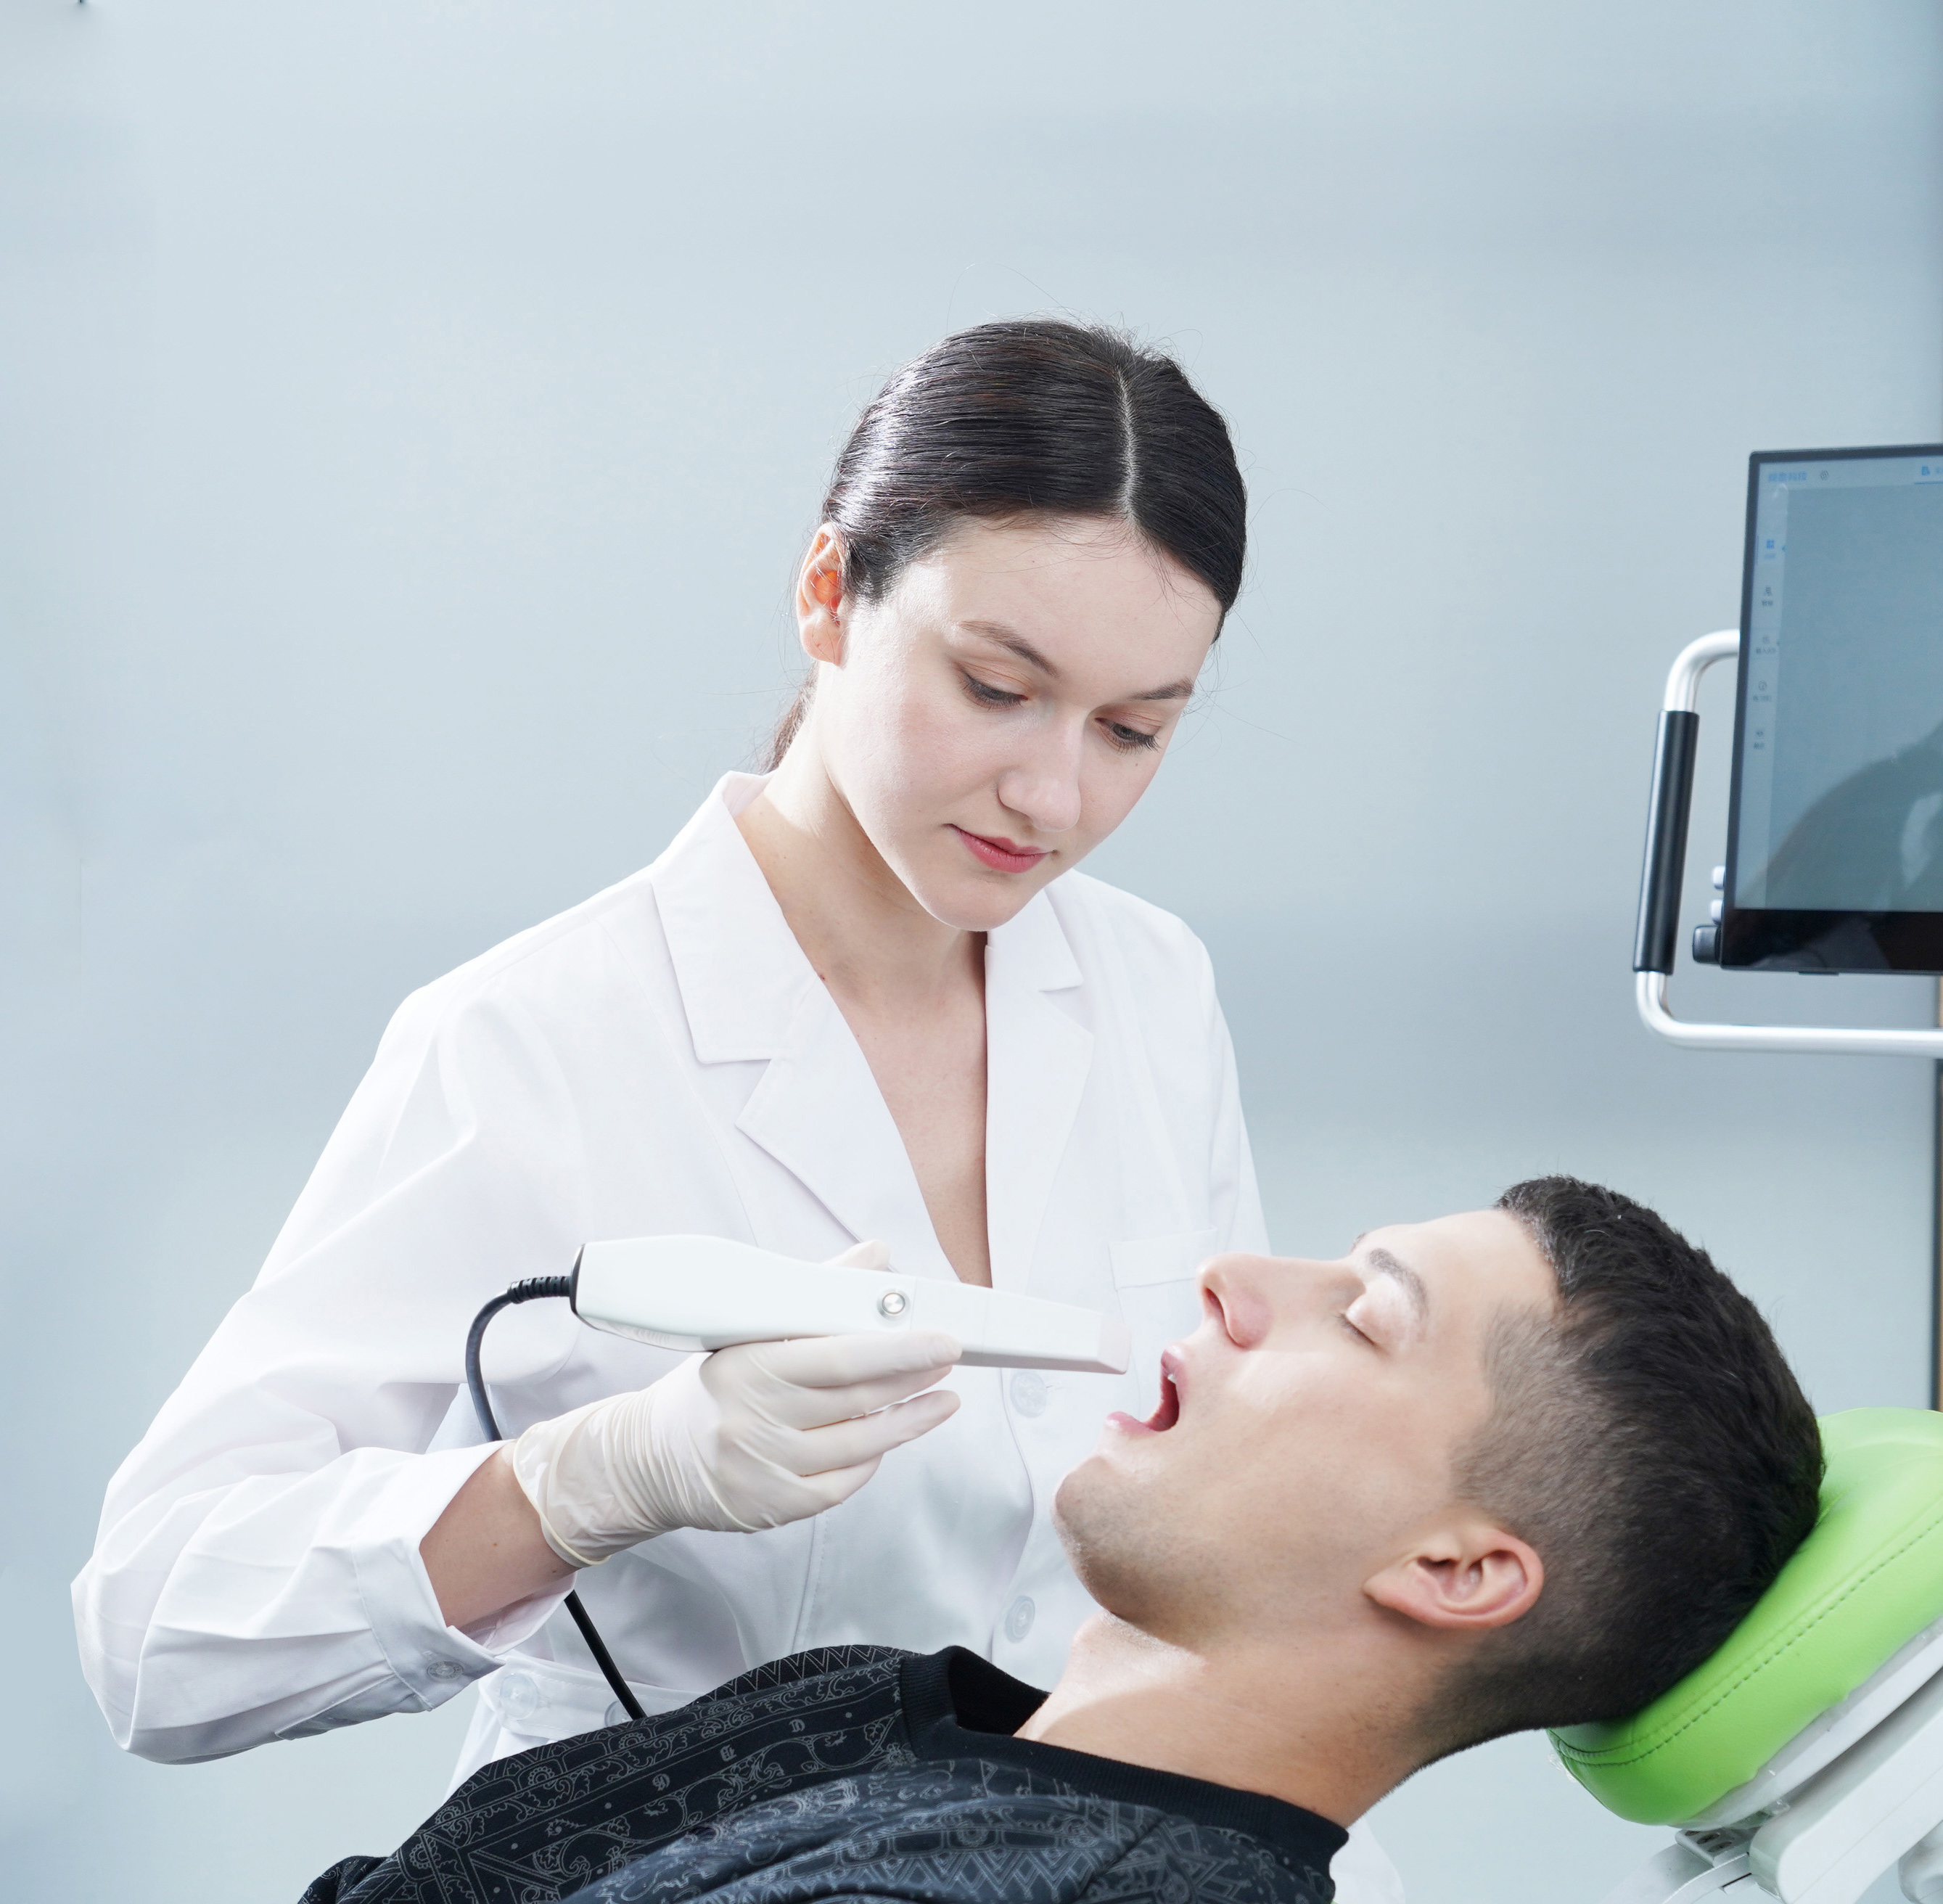 Как внутриротовые сканеры помогают стоматологическим лабораториям?